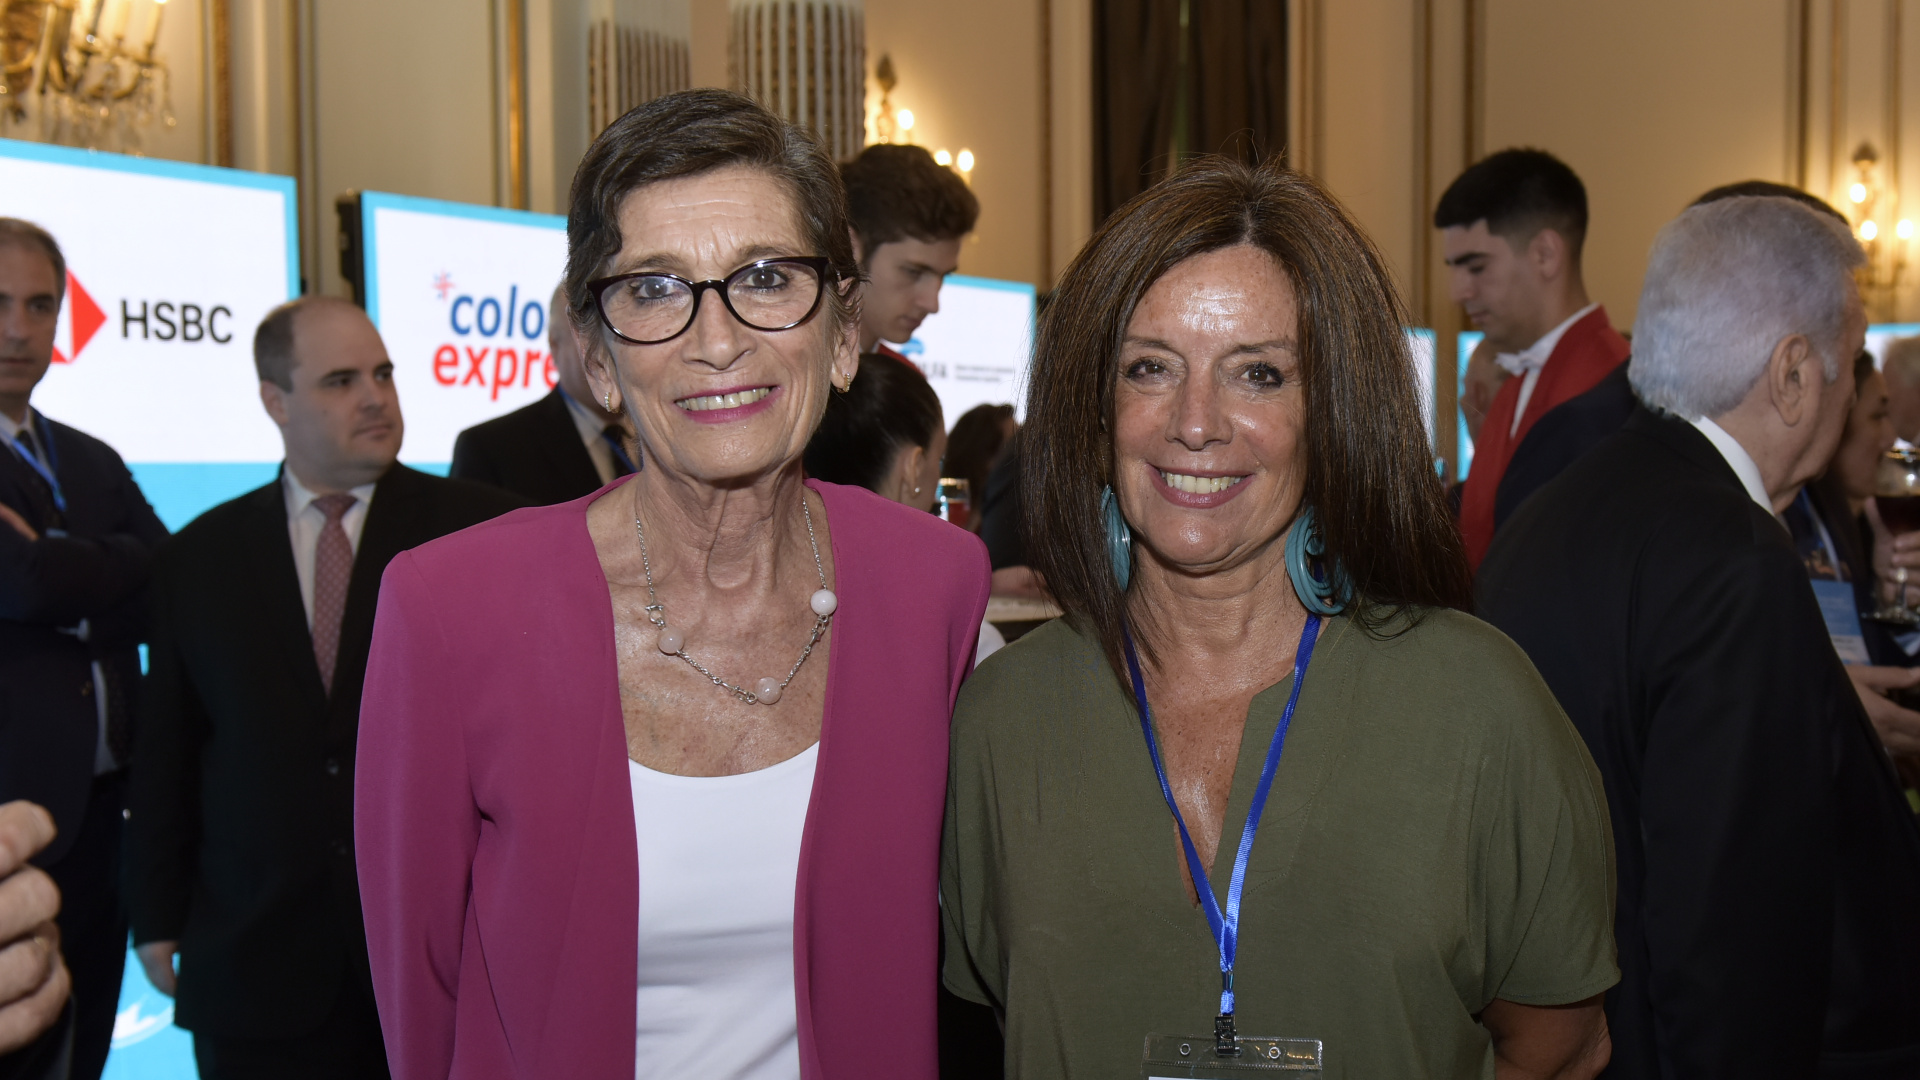 La embajadora de España, María Jesús Alonso Jiménez, y la directora de Corporación América, Carolina Barros

